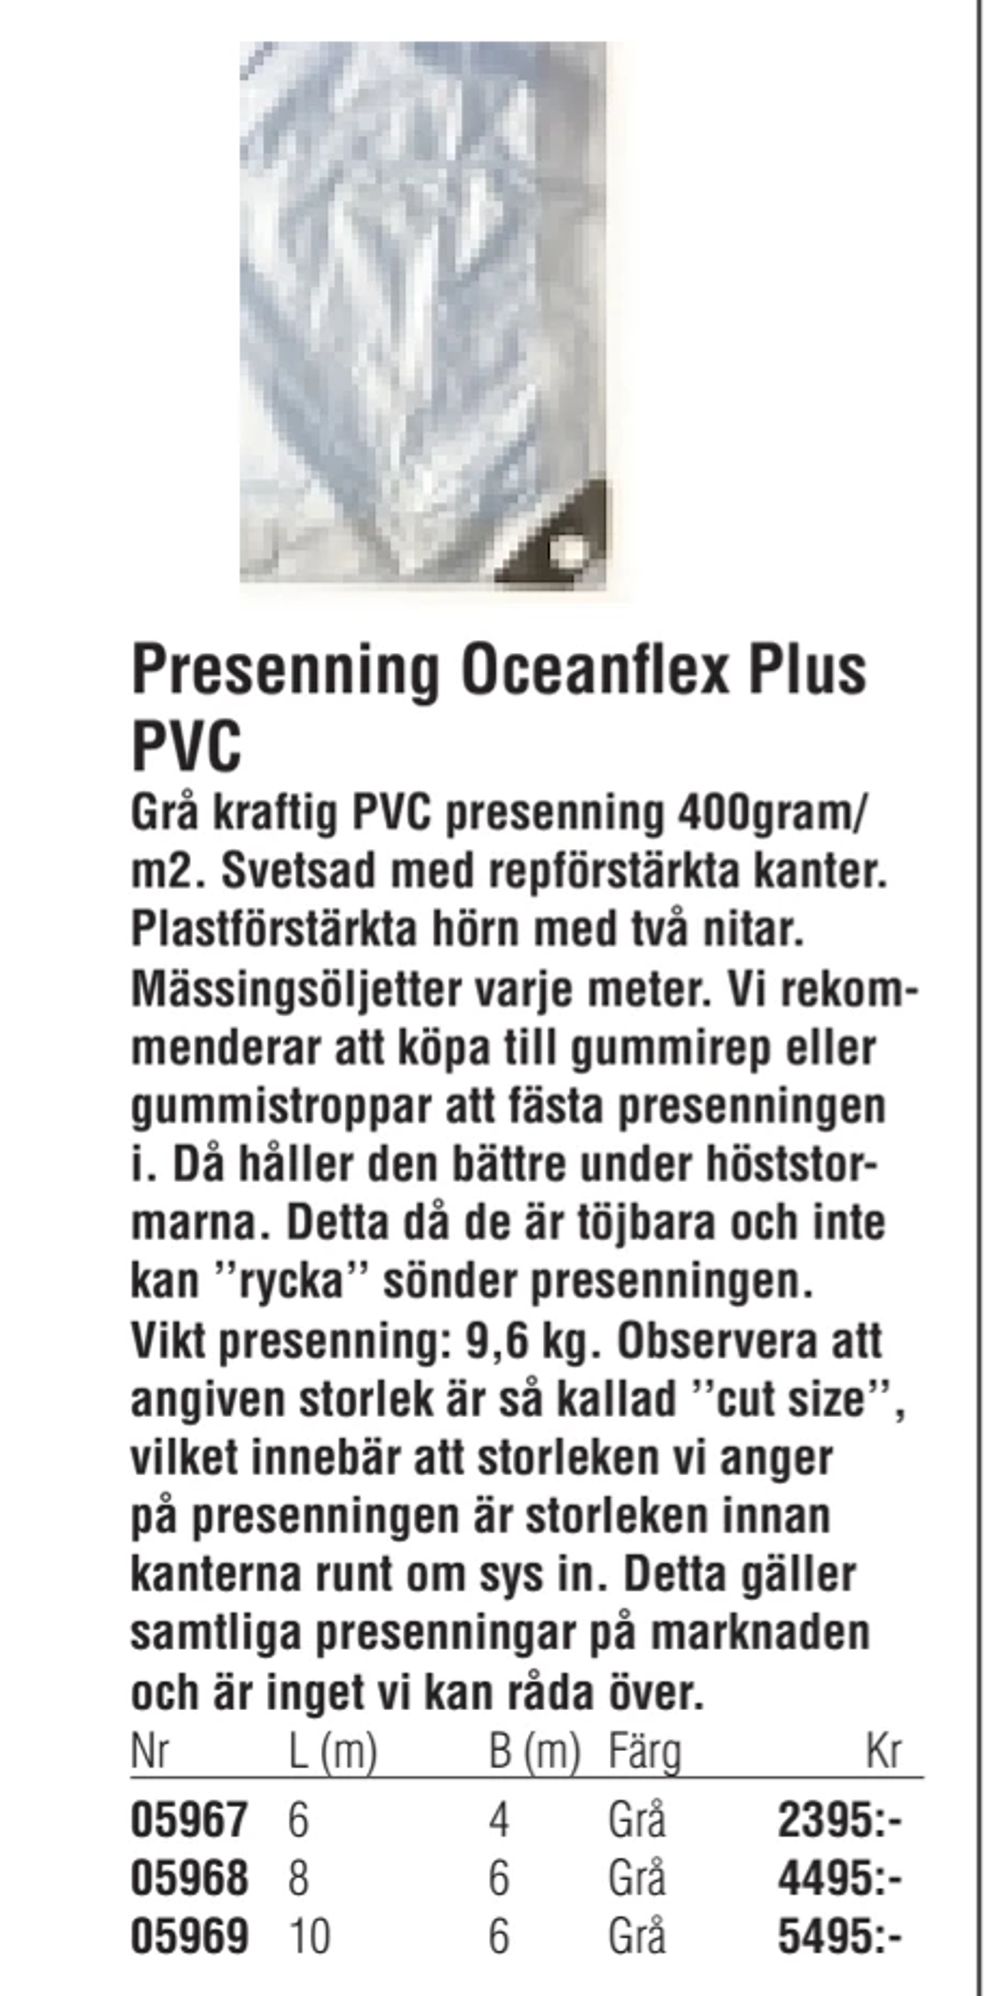 Erbjudanden på Presenning Oceanflex Plus PVC från Erlandsons Brygga för 2 395 kr